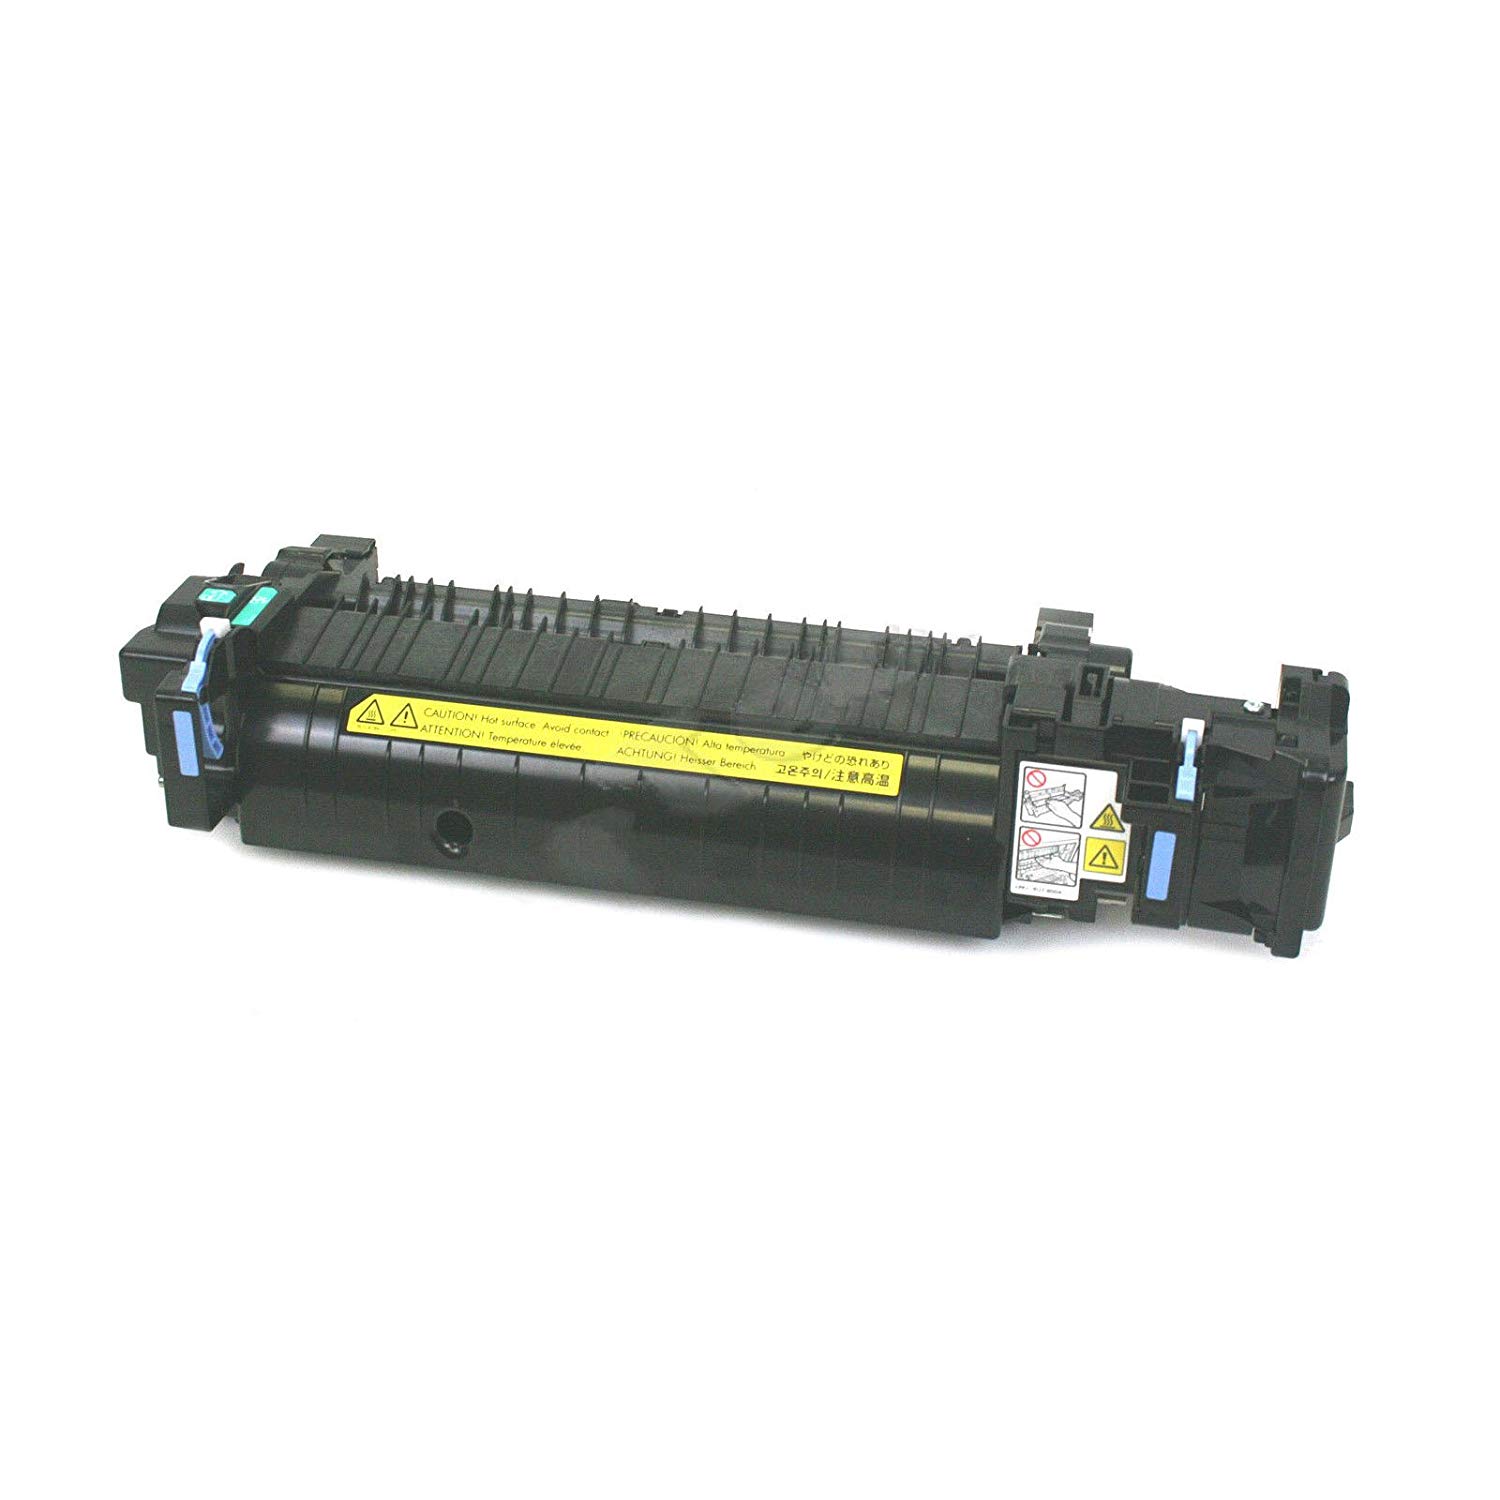 Original HP Fuser RM1-3525 for printers:  HP LaserJet 1500, 2500